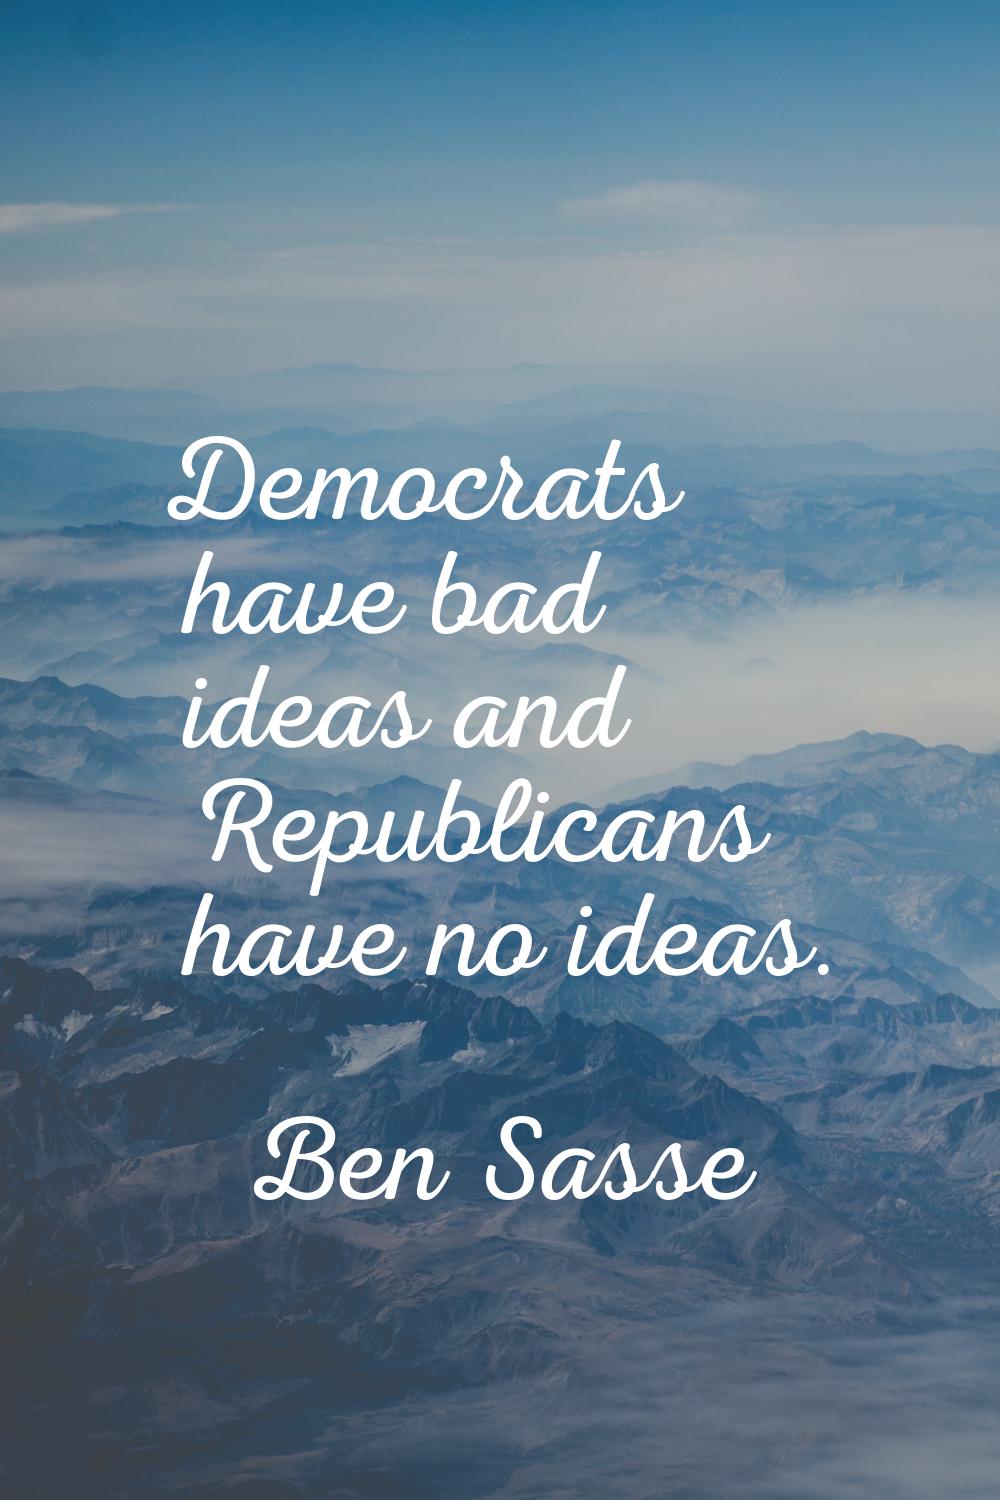 Democrats have bad ideas and Republicans have no ideas.